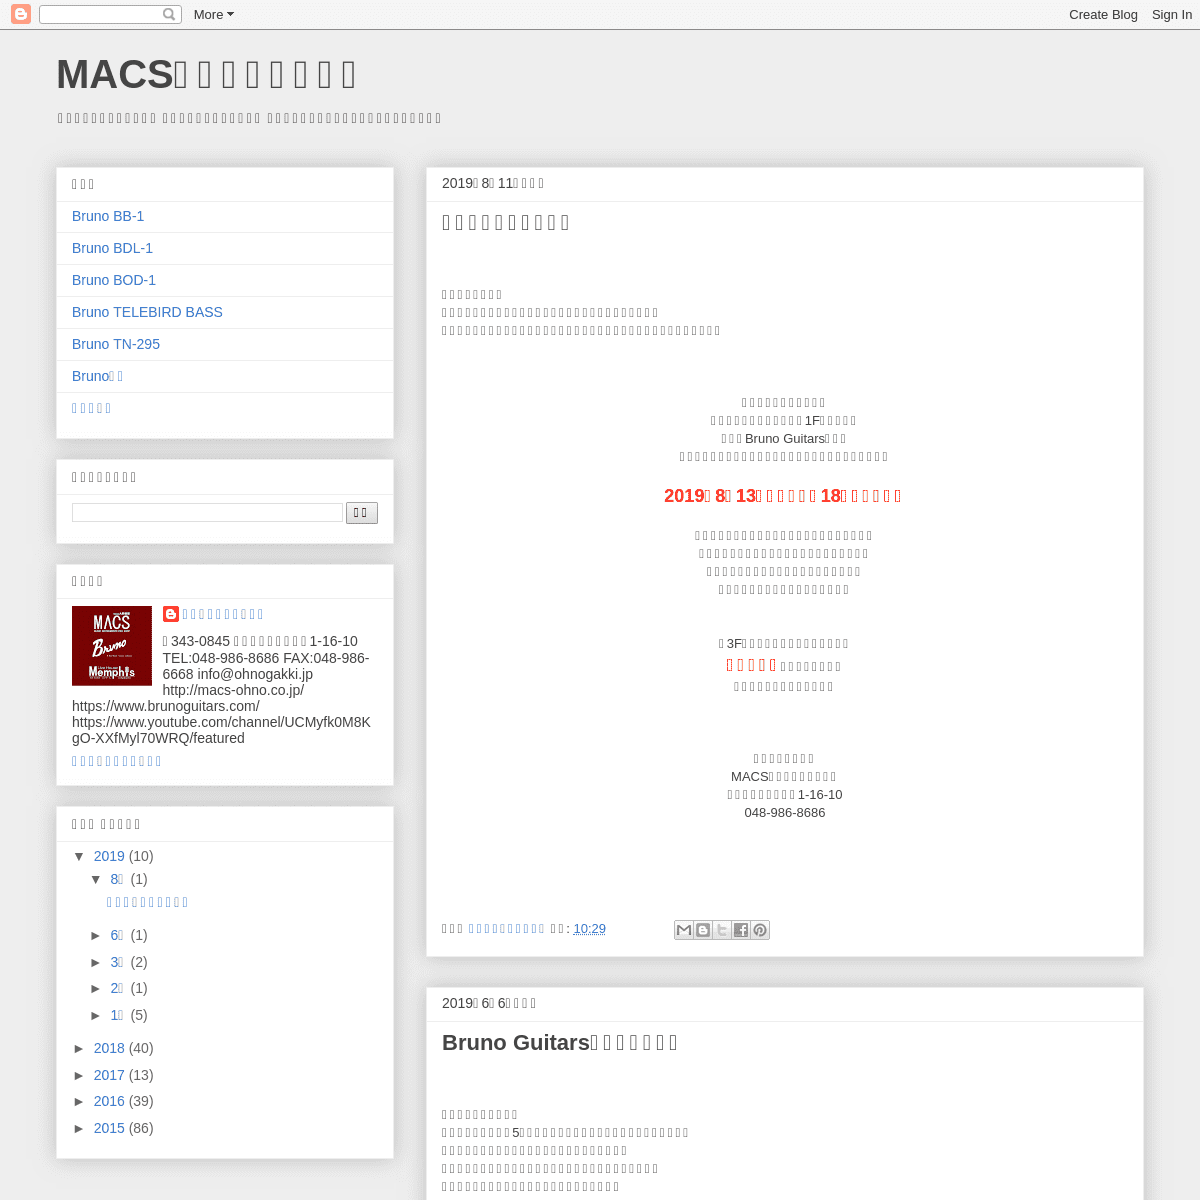 A complete backup of macs-ohno.blogspot.com